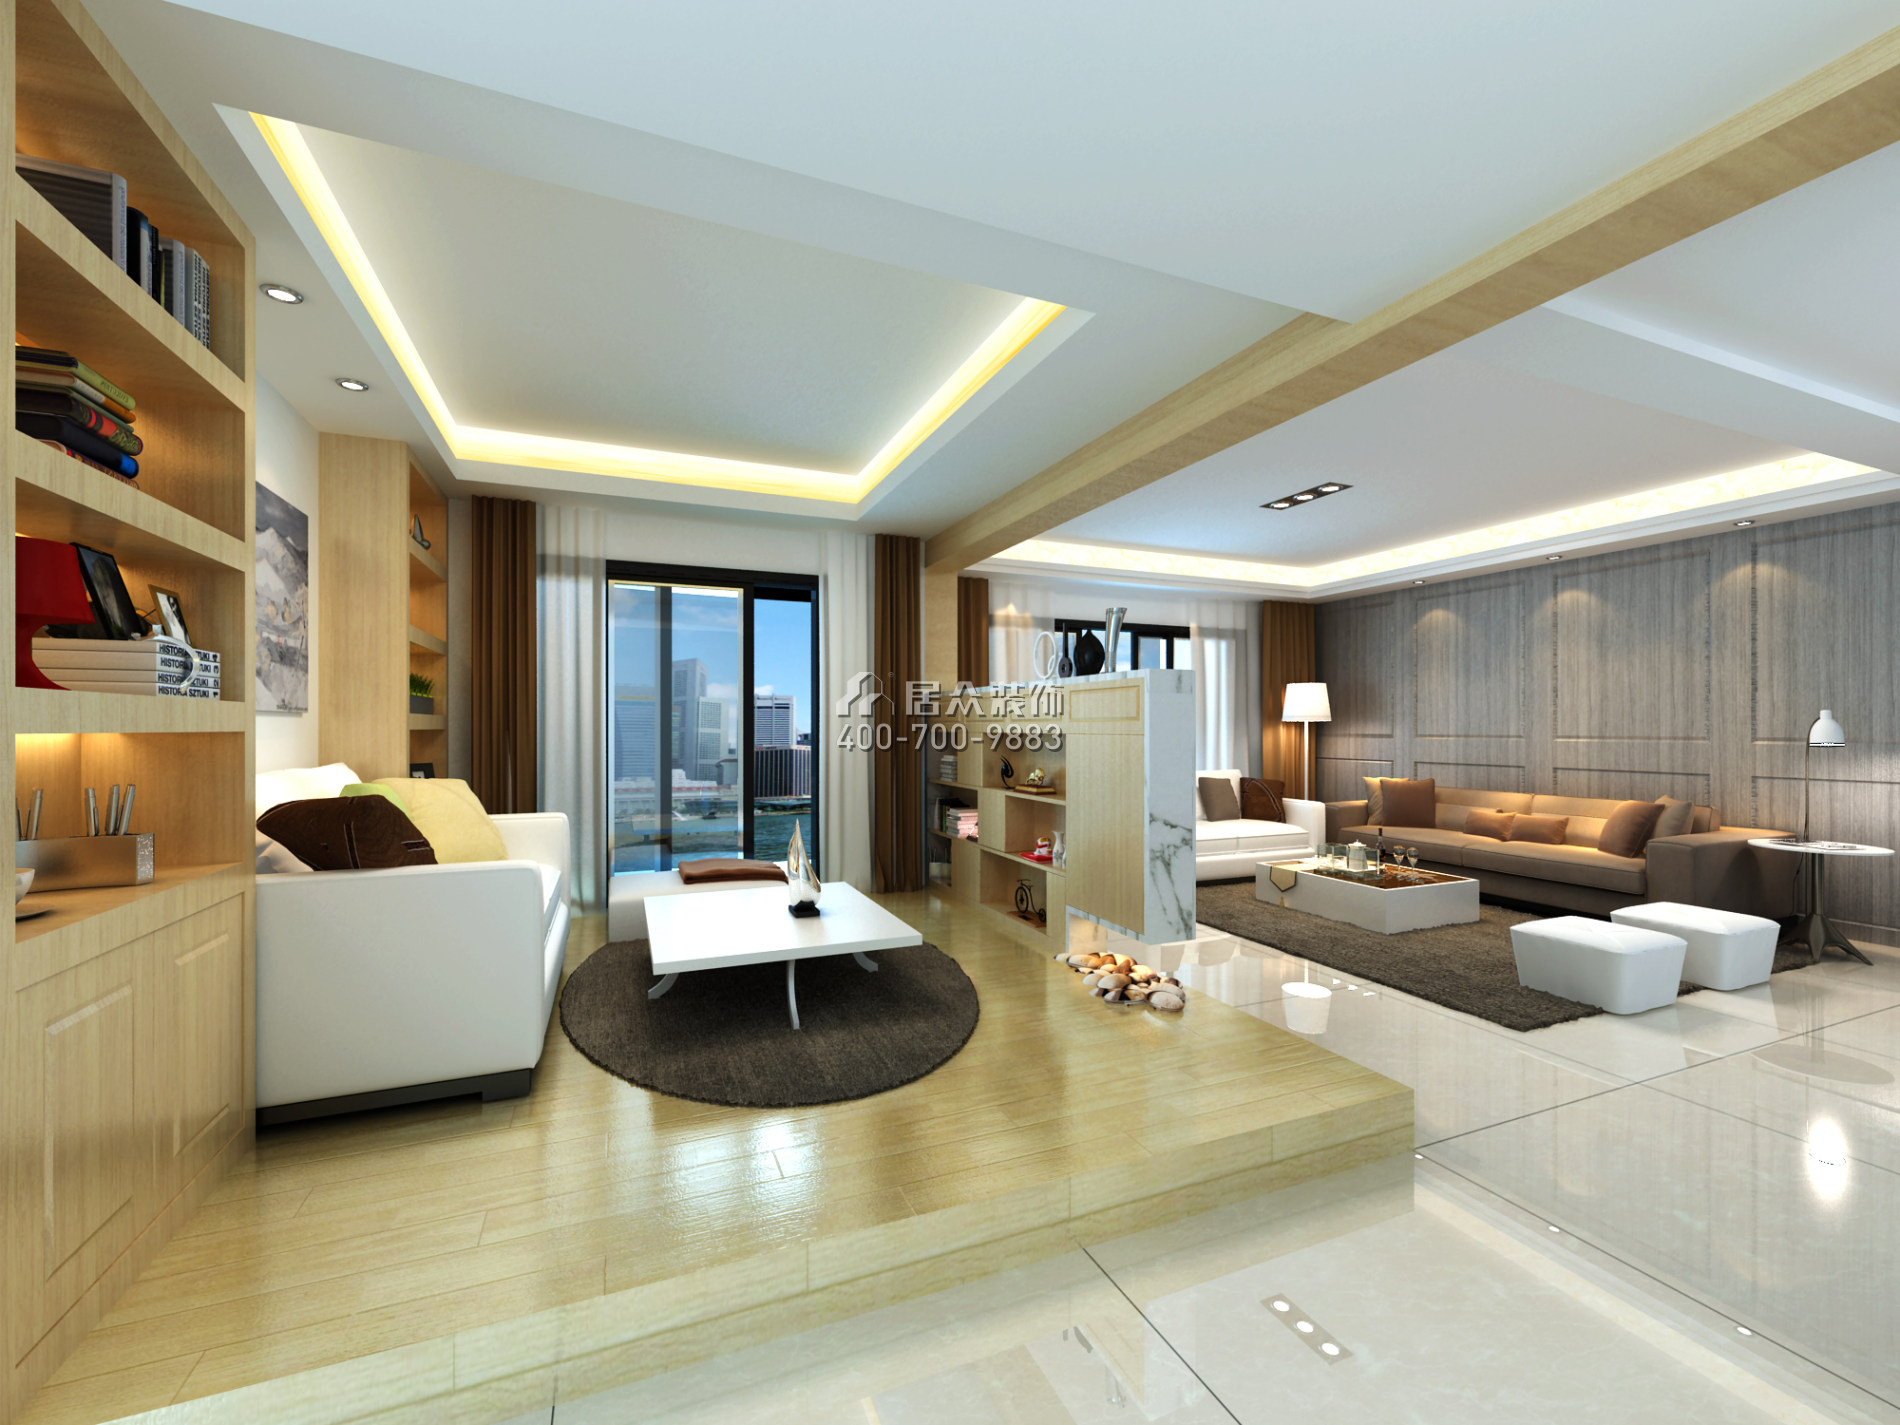 天湖郦都180平方米现代简约风格平层户型客厅装修效果图